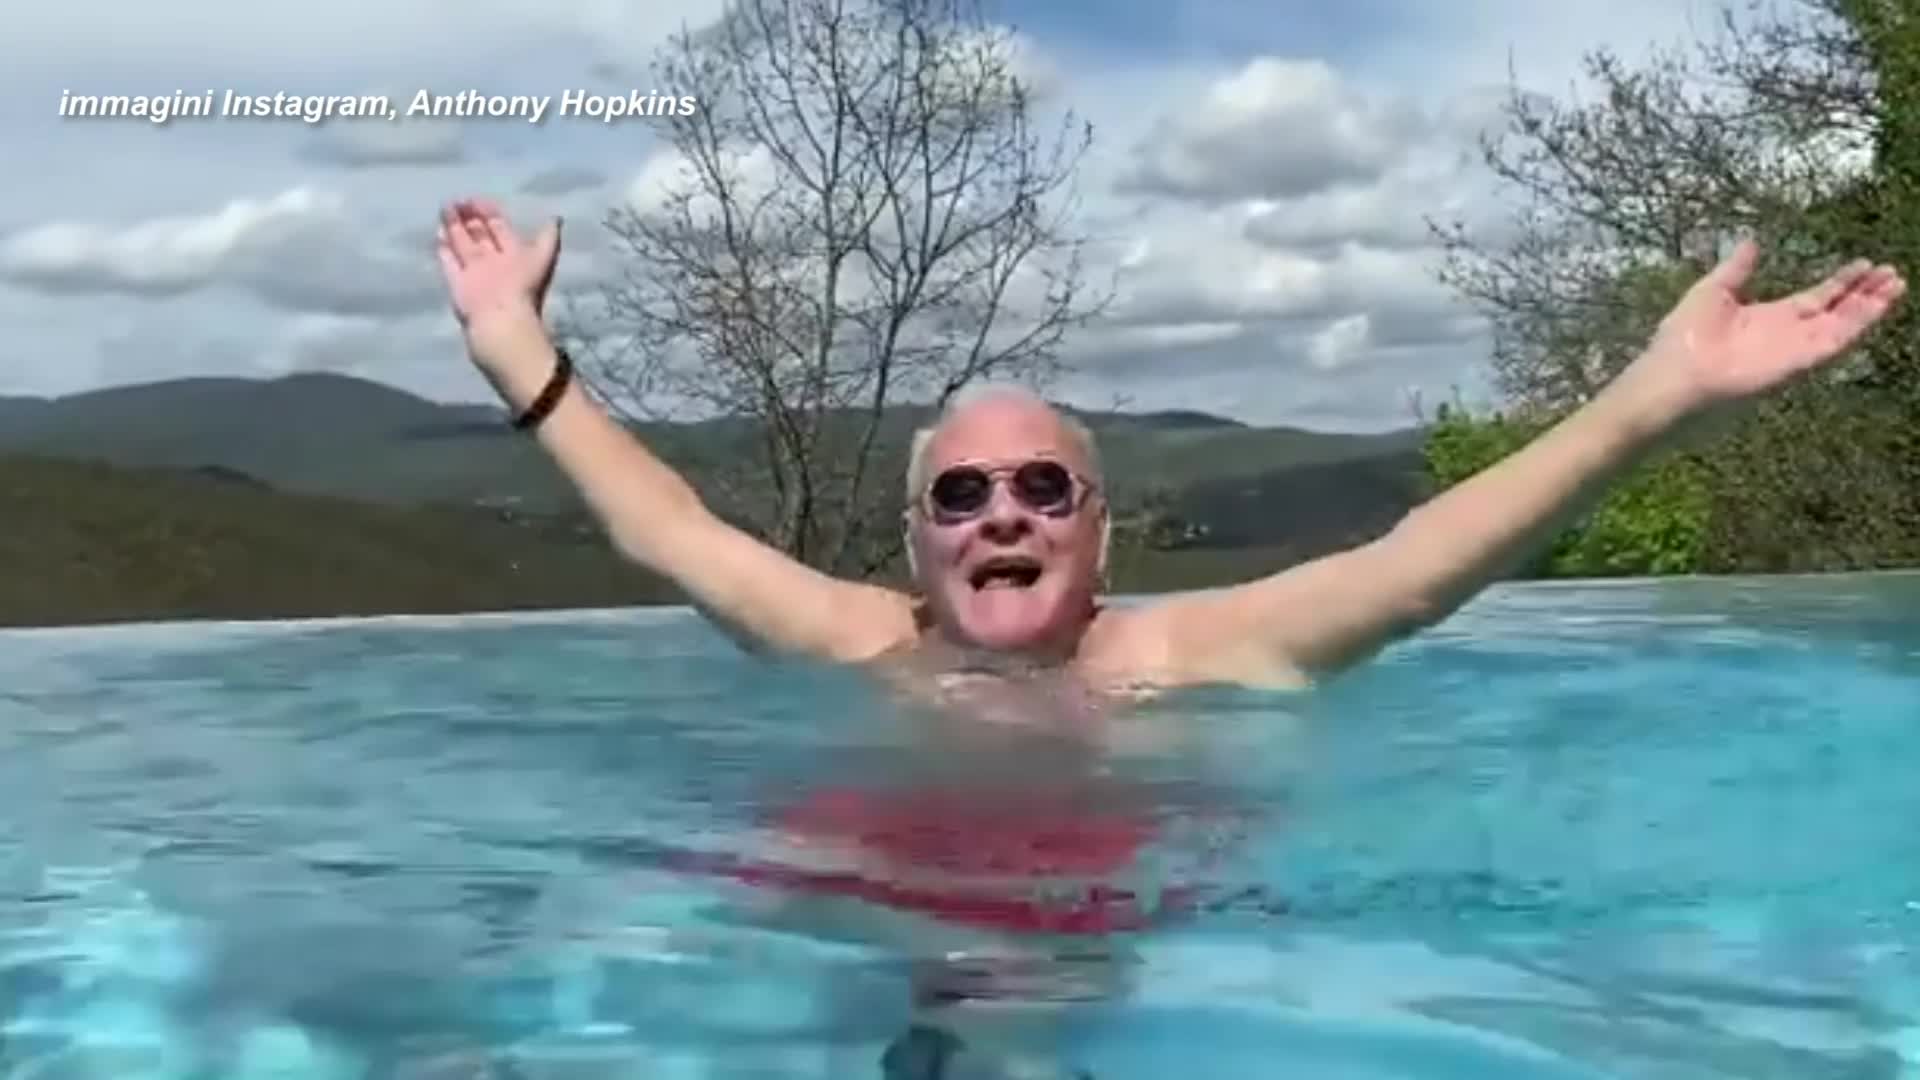 Anthony Hopkins in piscina canta "Bella ciao" e urla "sono italiano"